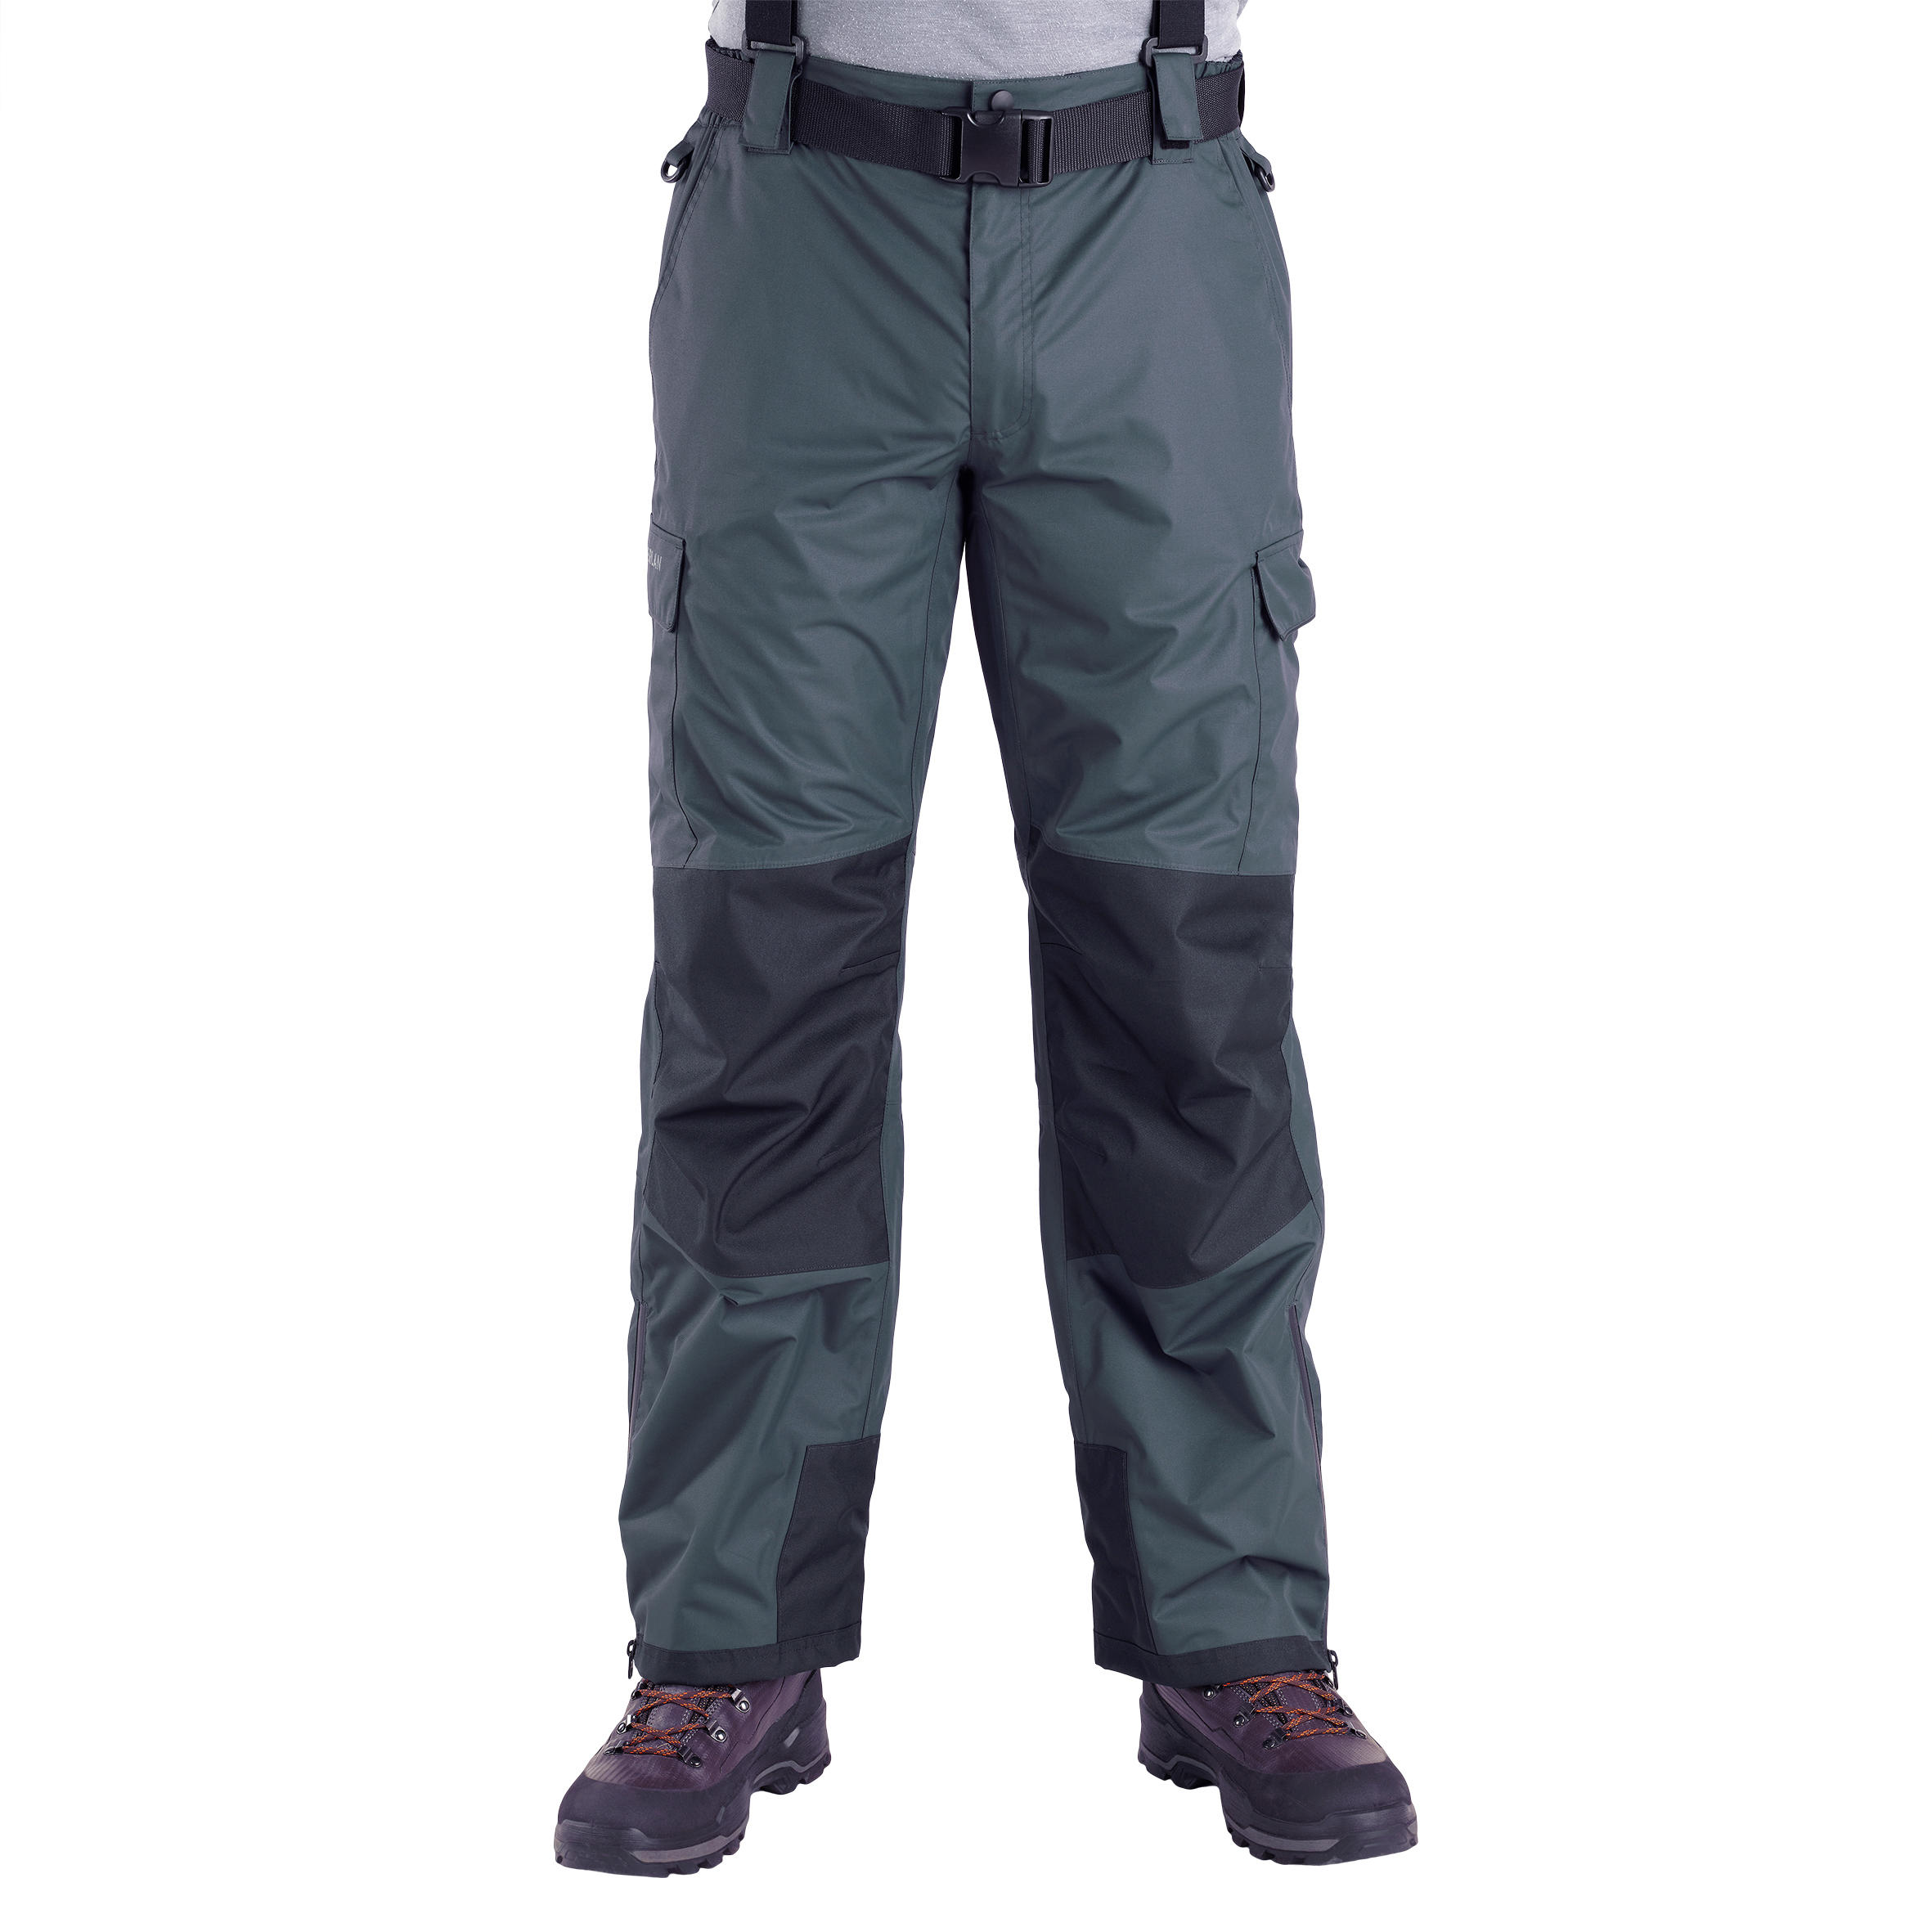 Pantalon de pêche imperméable - 500 gris - CAPERLAN